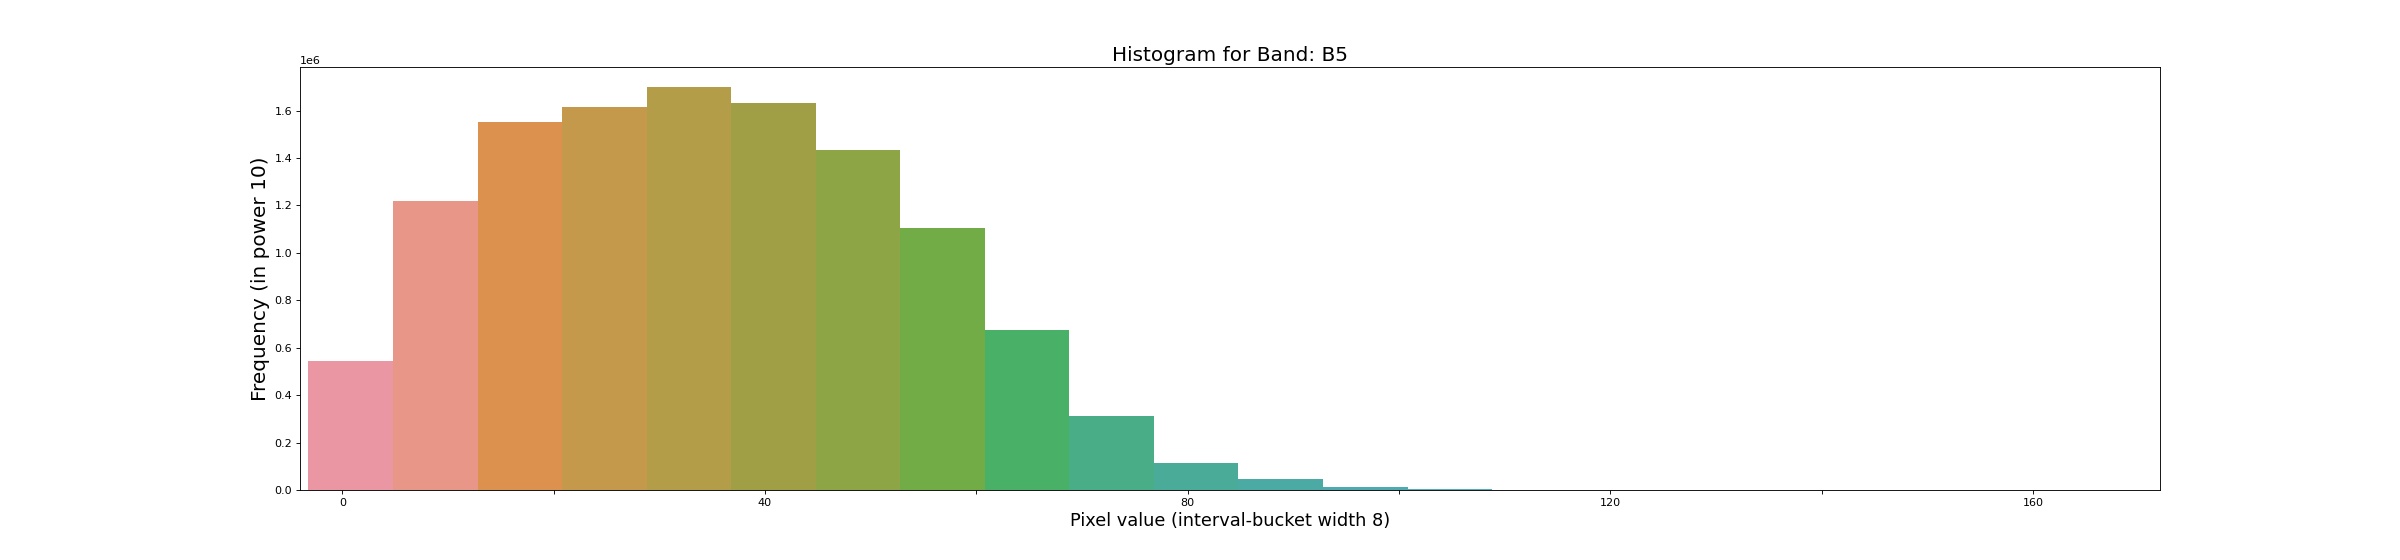 Histogram for image bands 5 